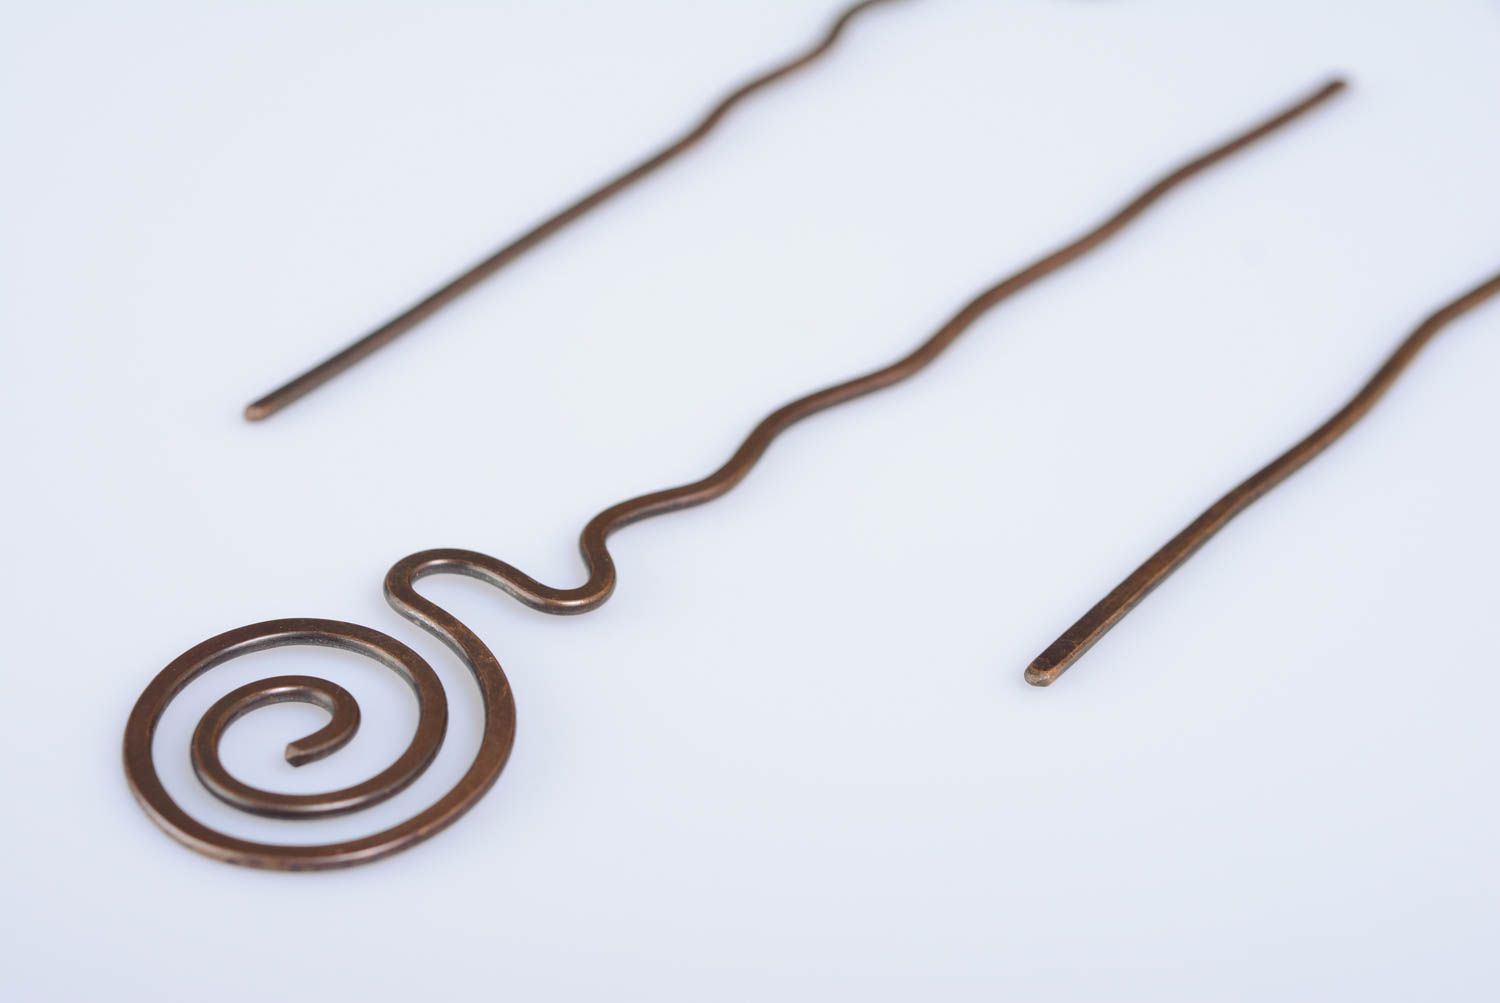 Заколка для волос из меди в технике wire wrap ручной работы в греческом стиле фото 1